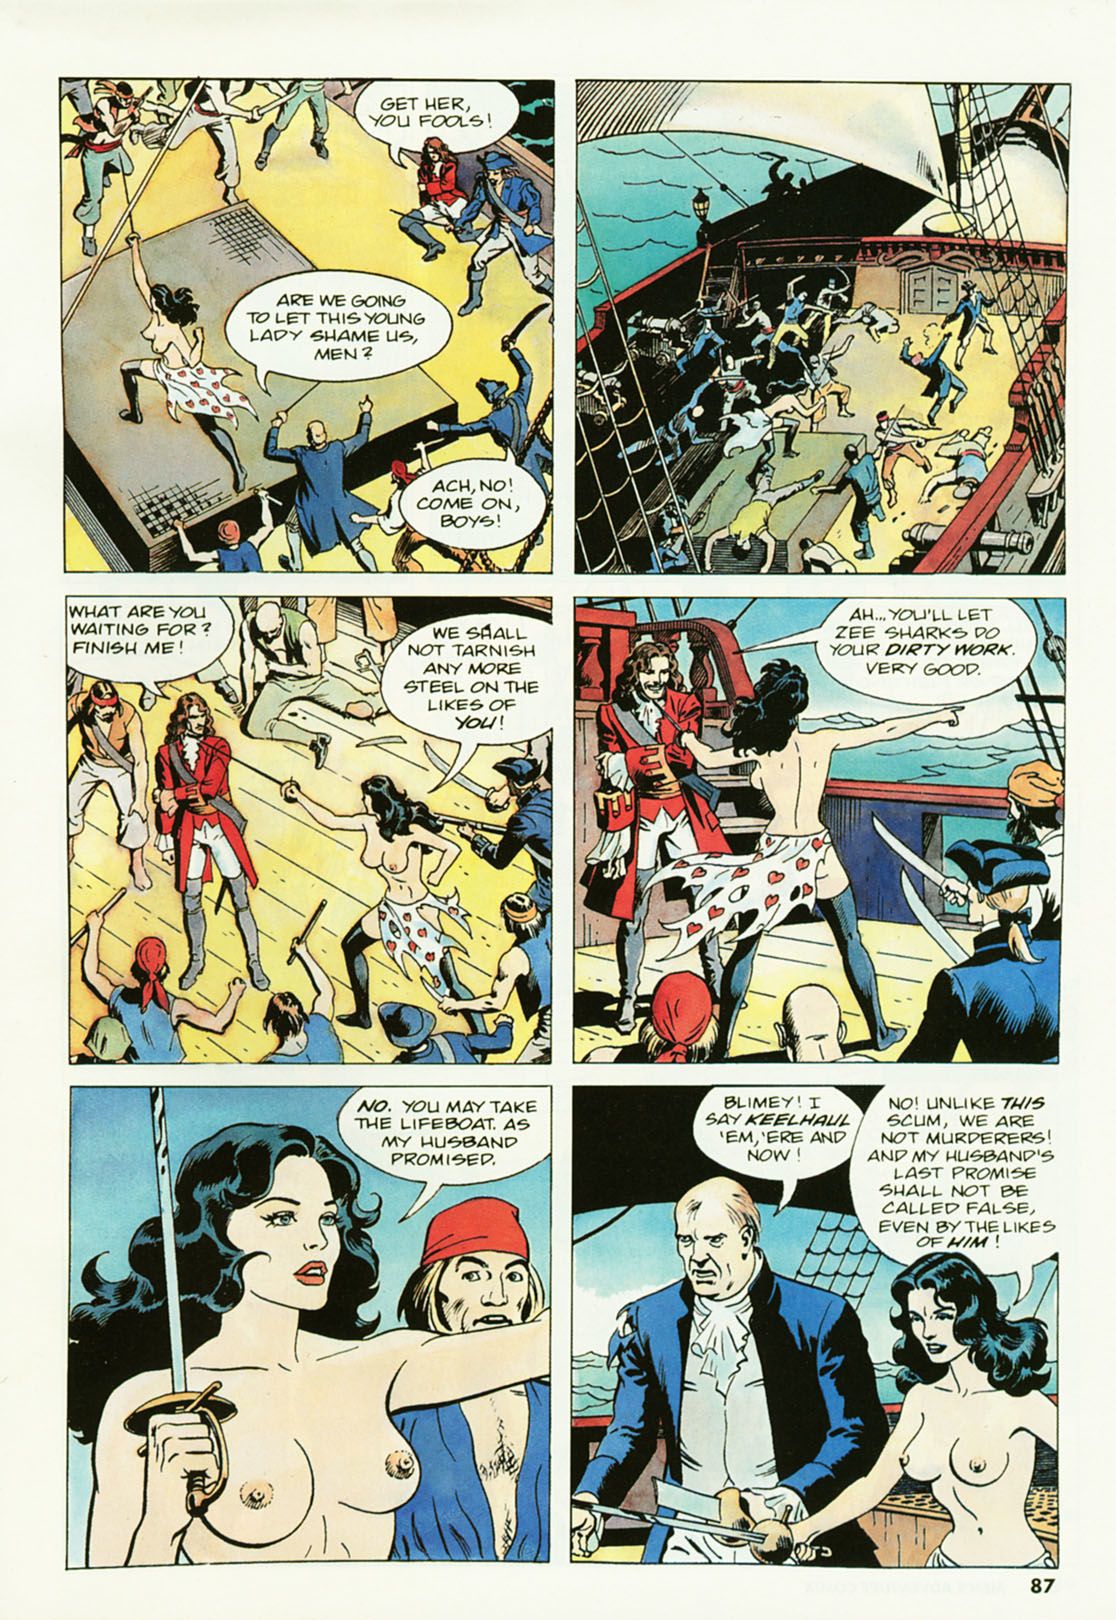 penthouse męskie przygody komiks #2 część 4